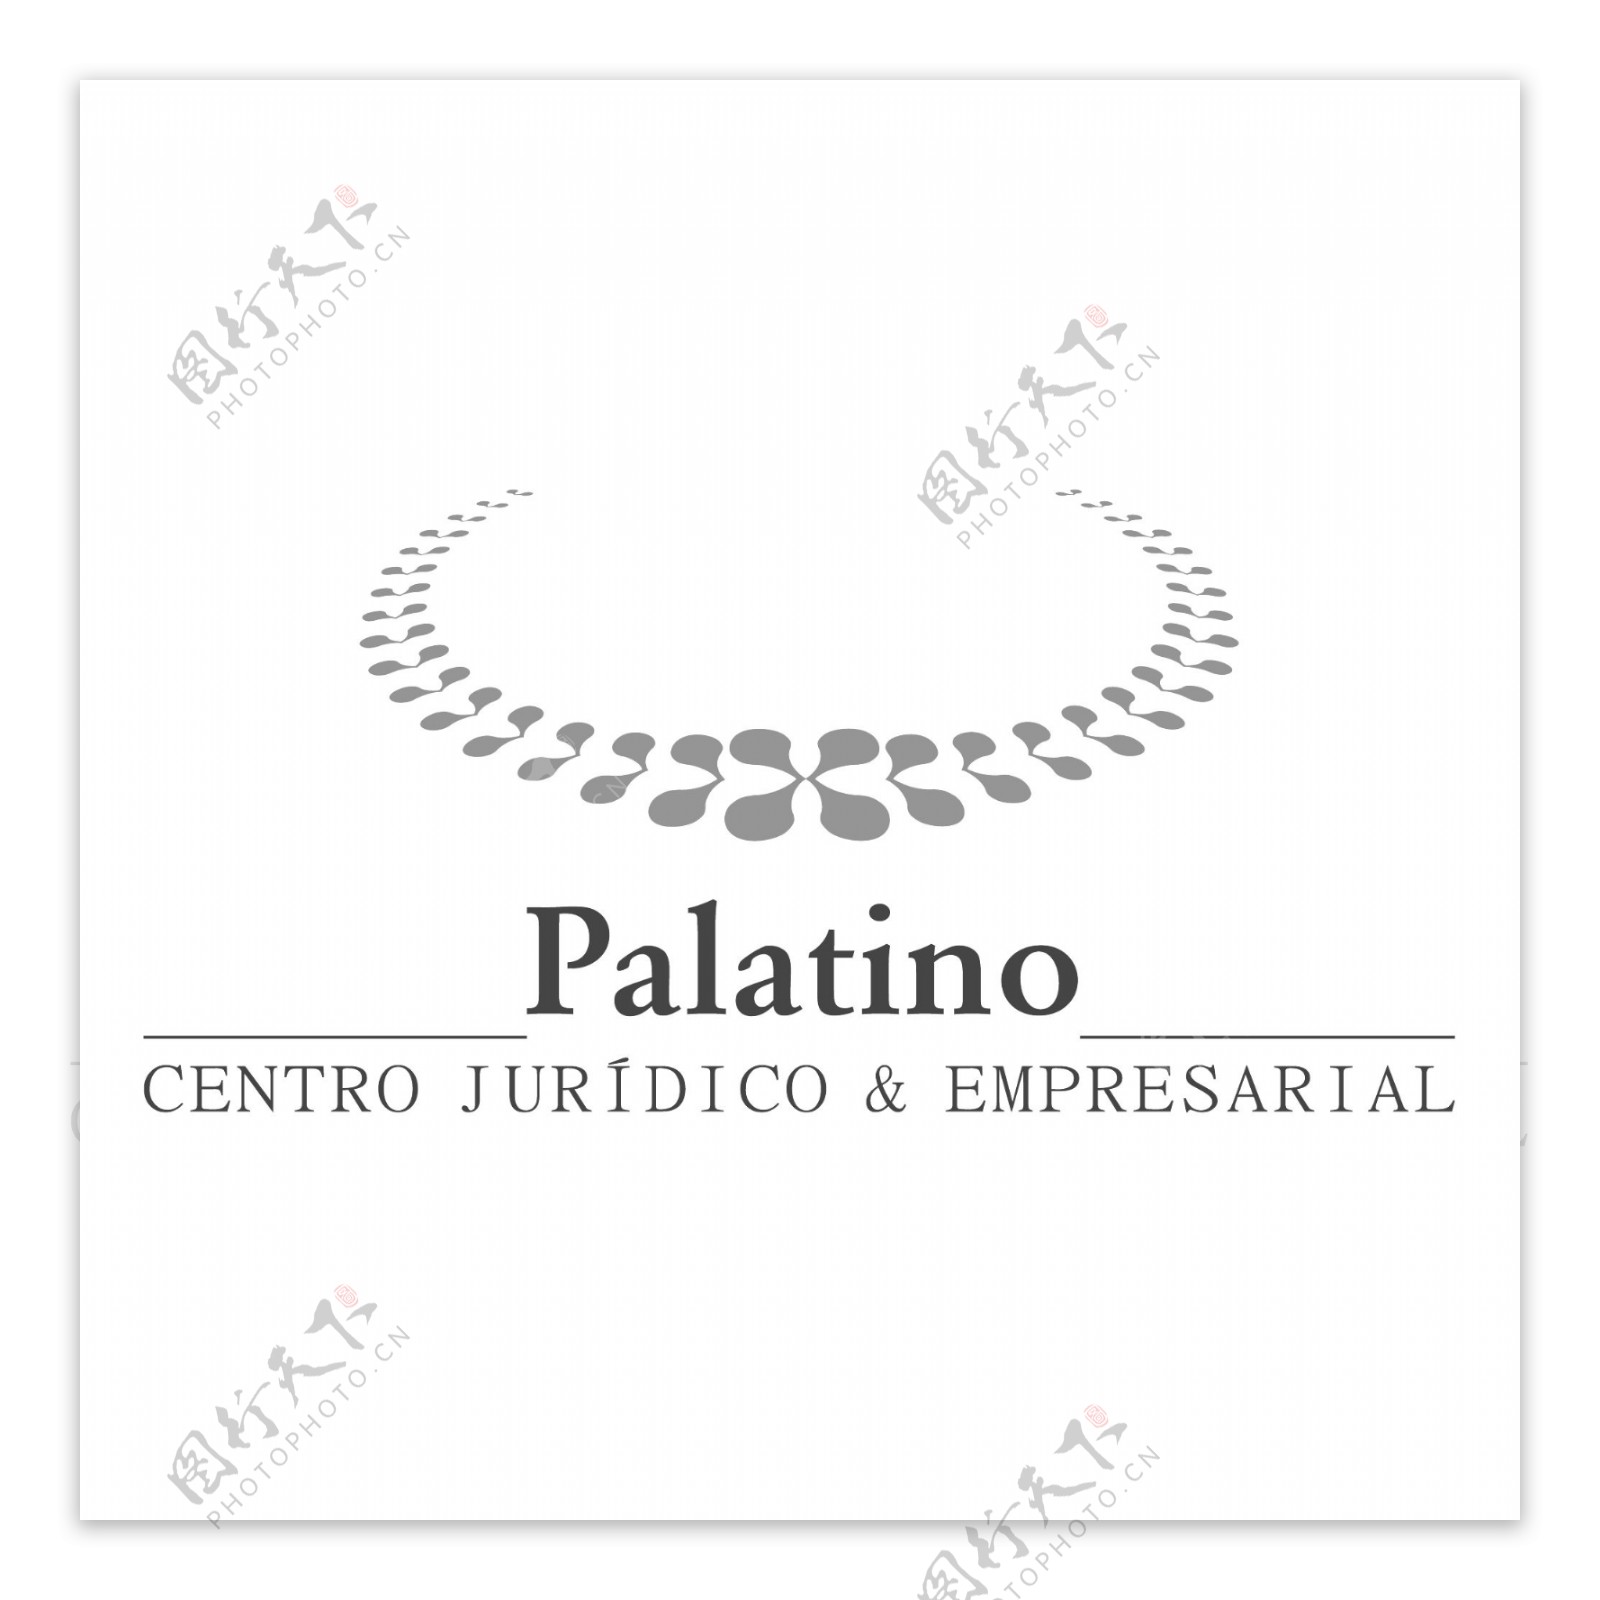 帕拉蒂诺中心juridico公司